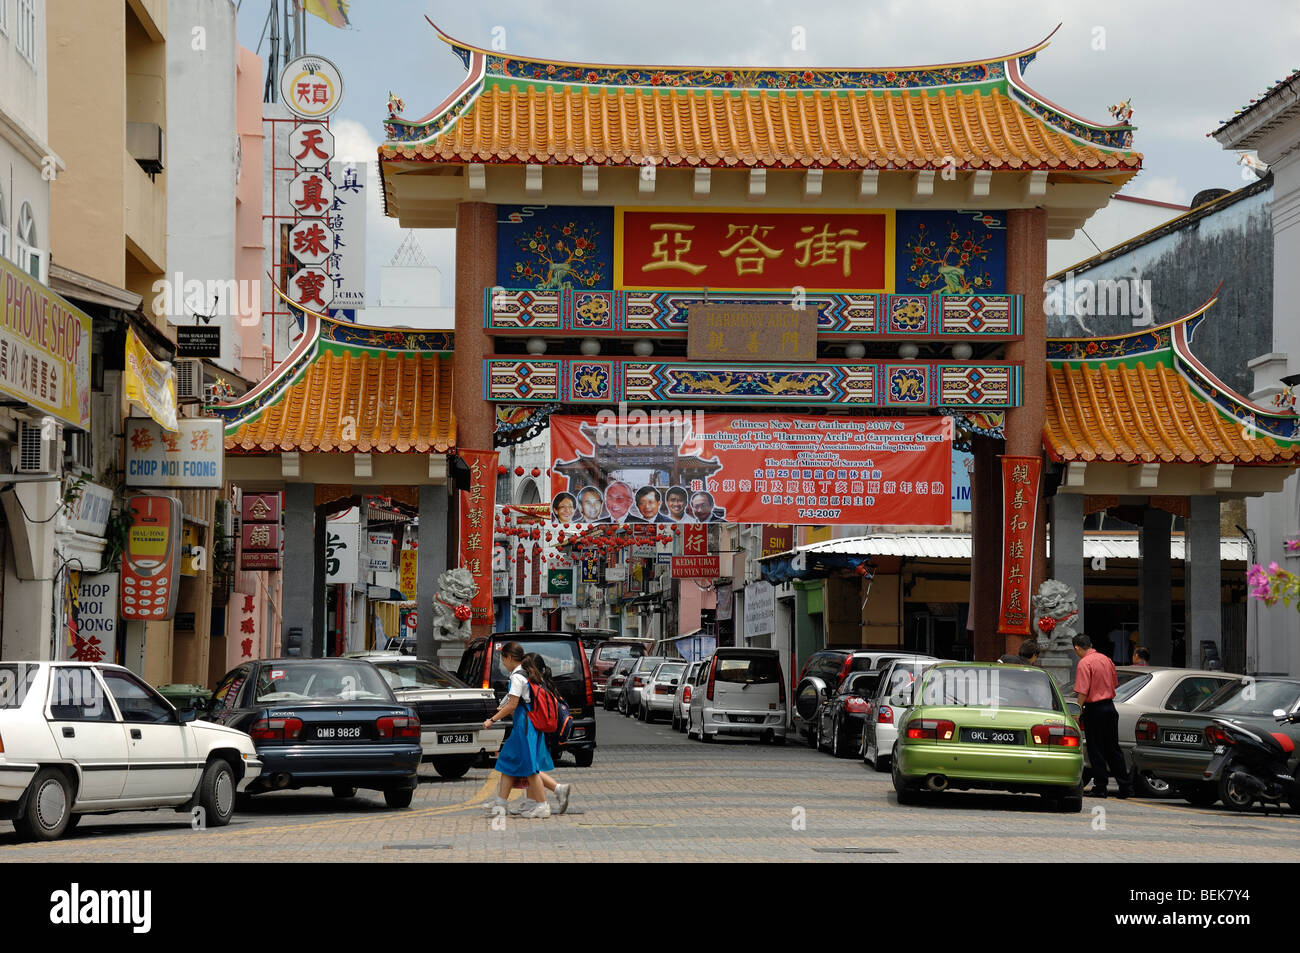 Chinese Arch Gateway or Entrance to Chinatown Kuching Sarawak Malaysia